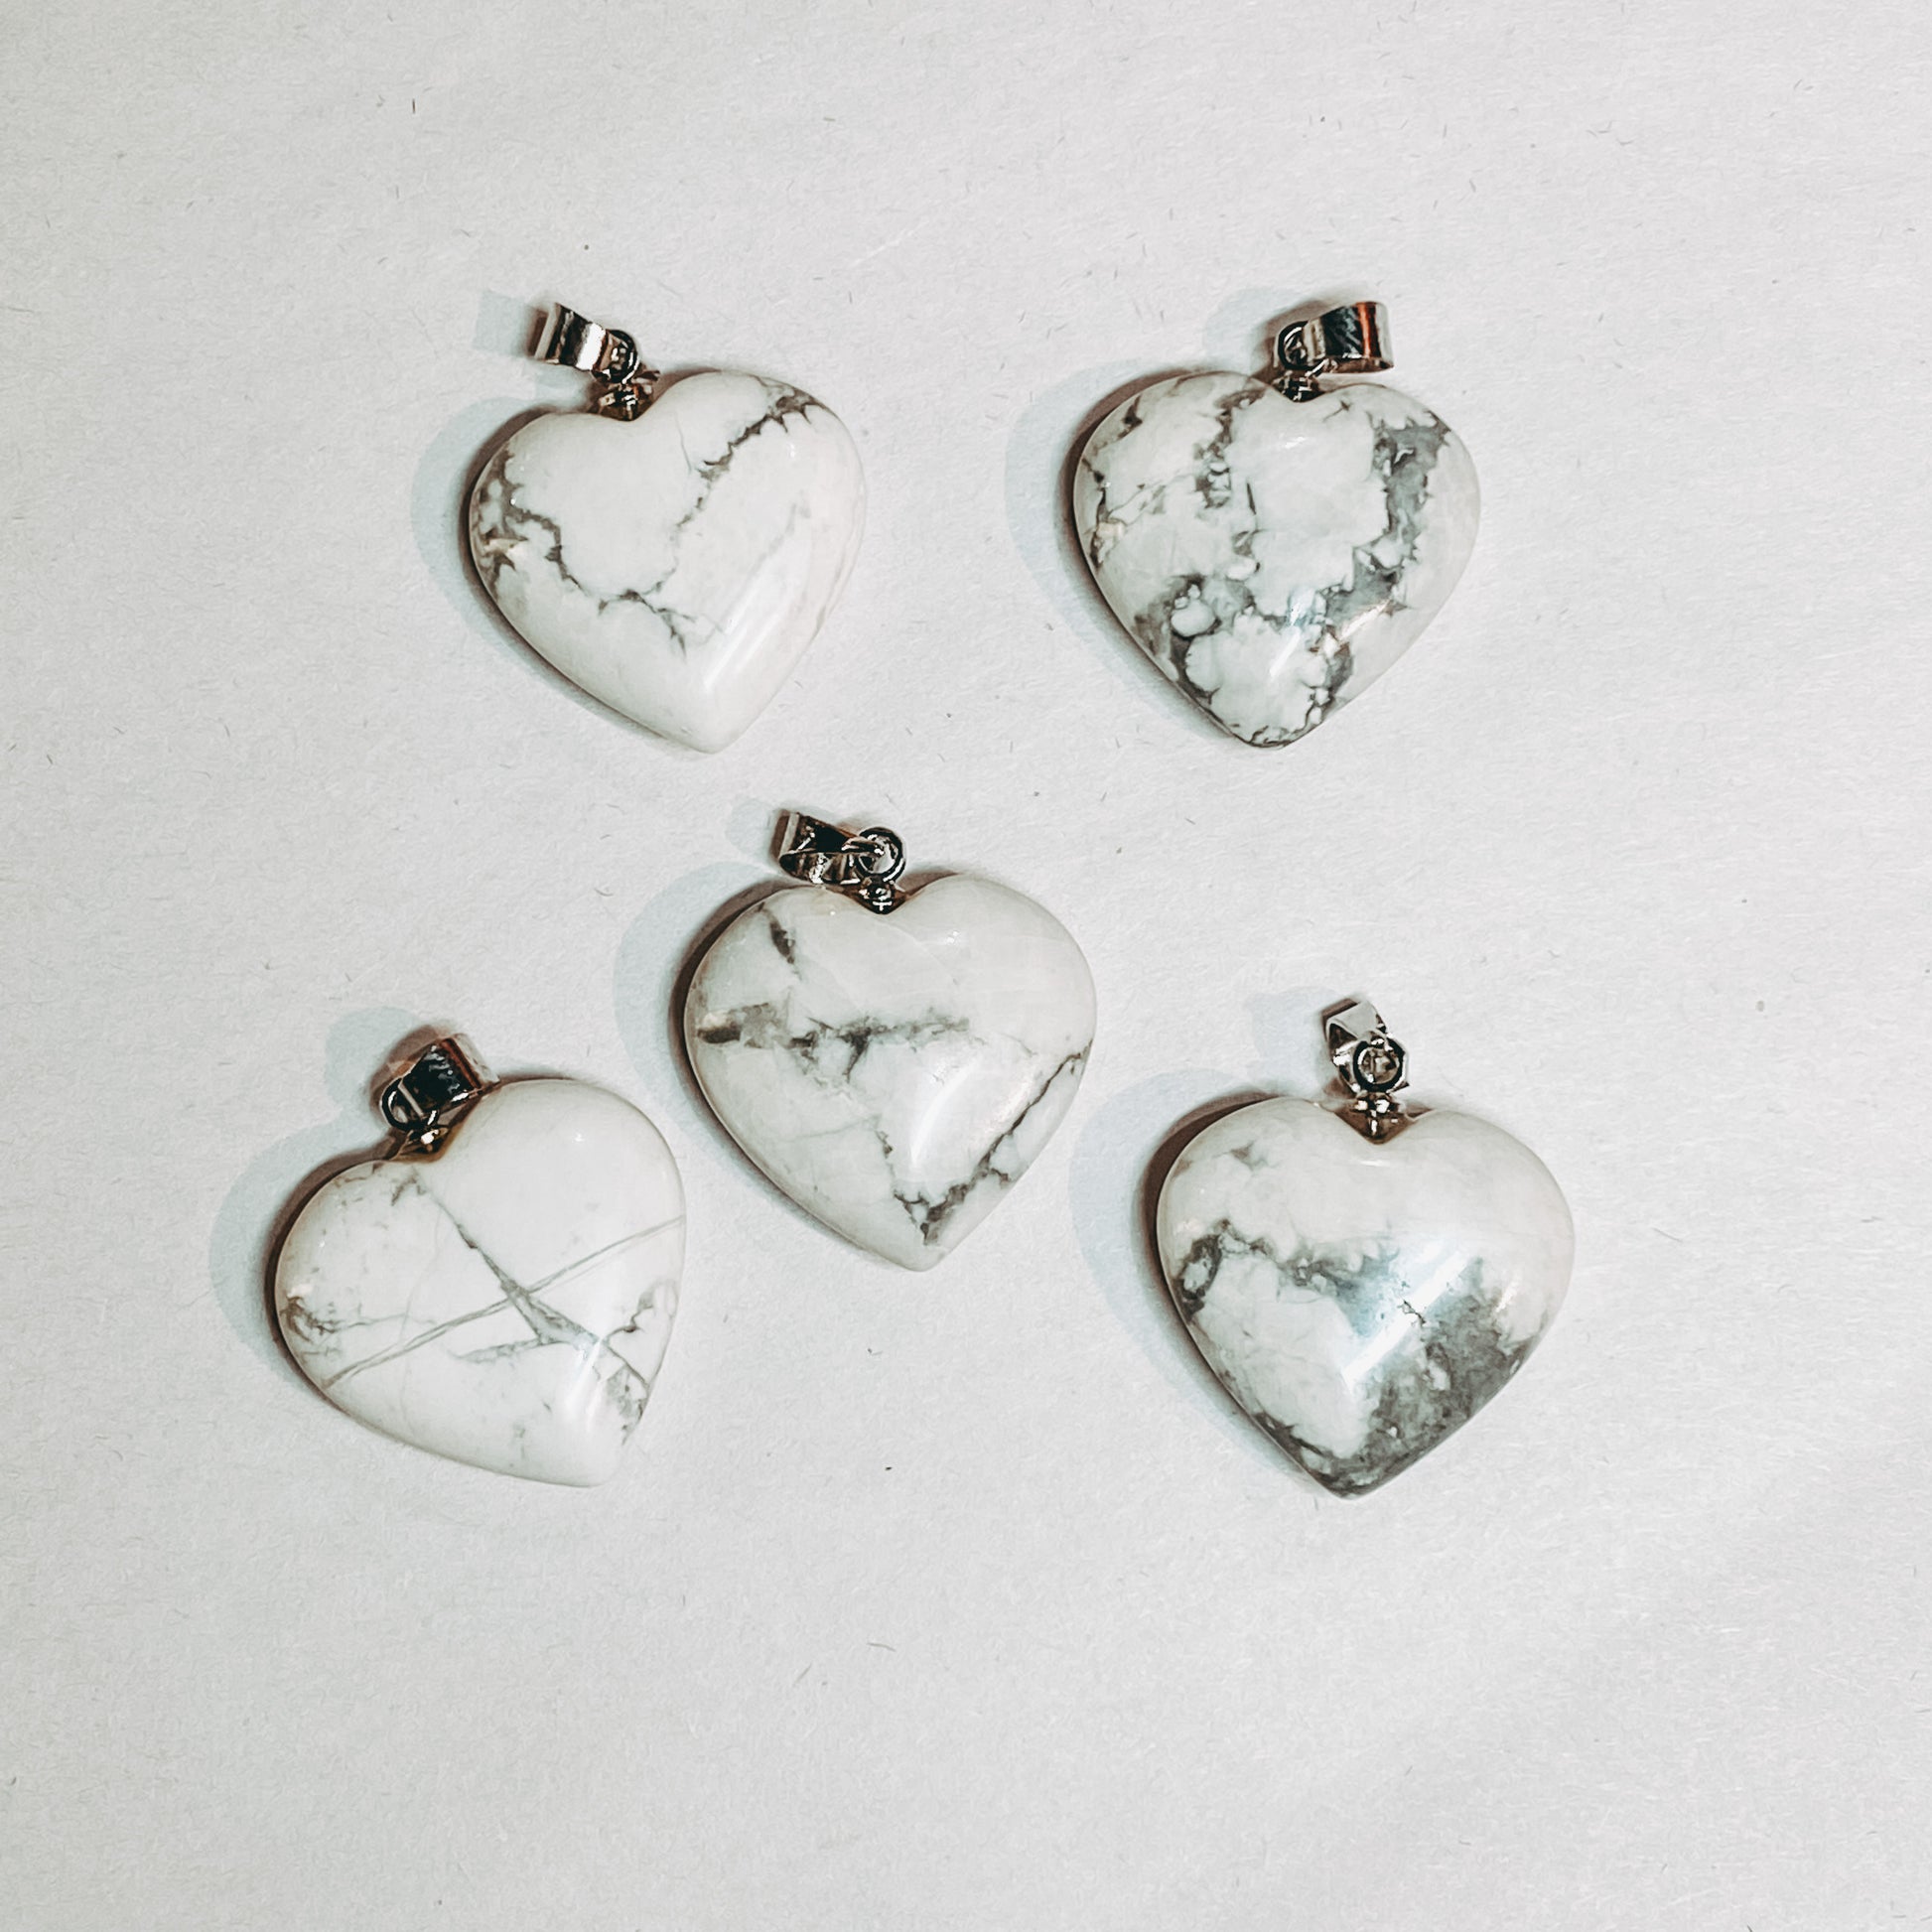 White Howlite Heart Pendant - Rivendell Shop